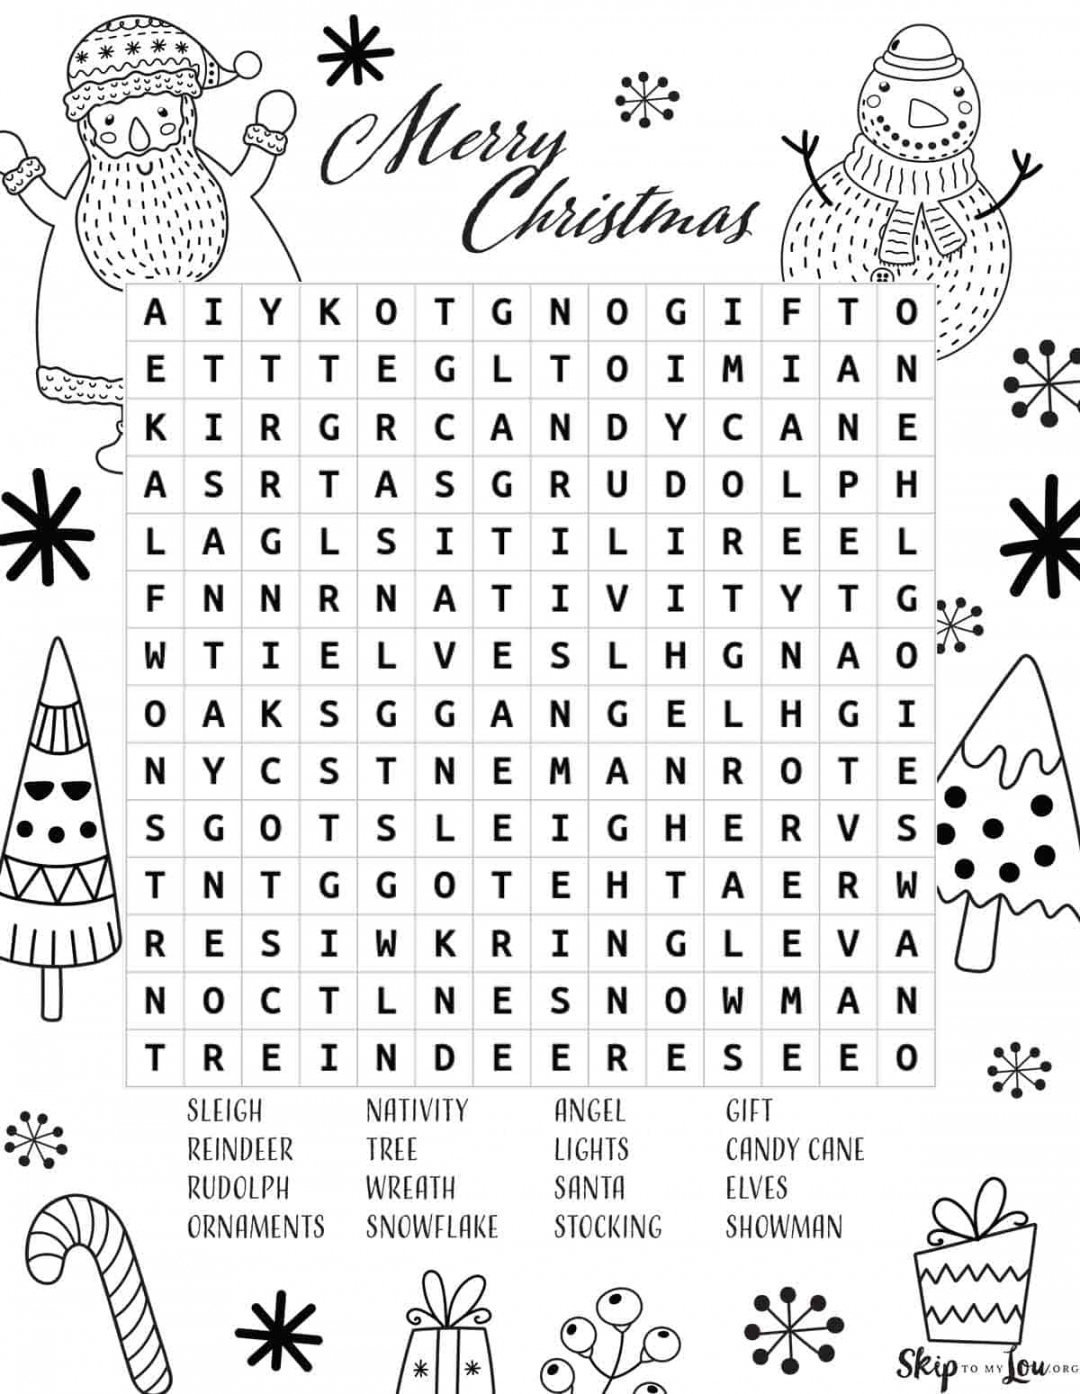 Free Printable Christmas Word Search - Printable - Christmas Word Search  Skip To My Lou